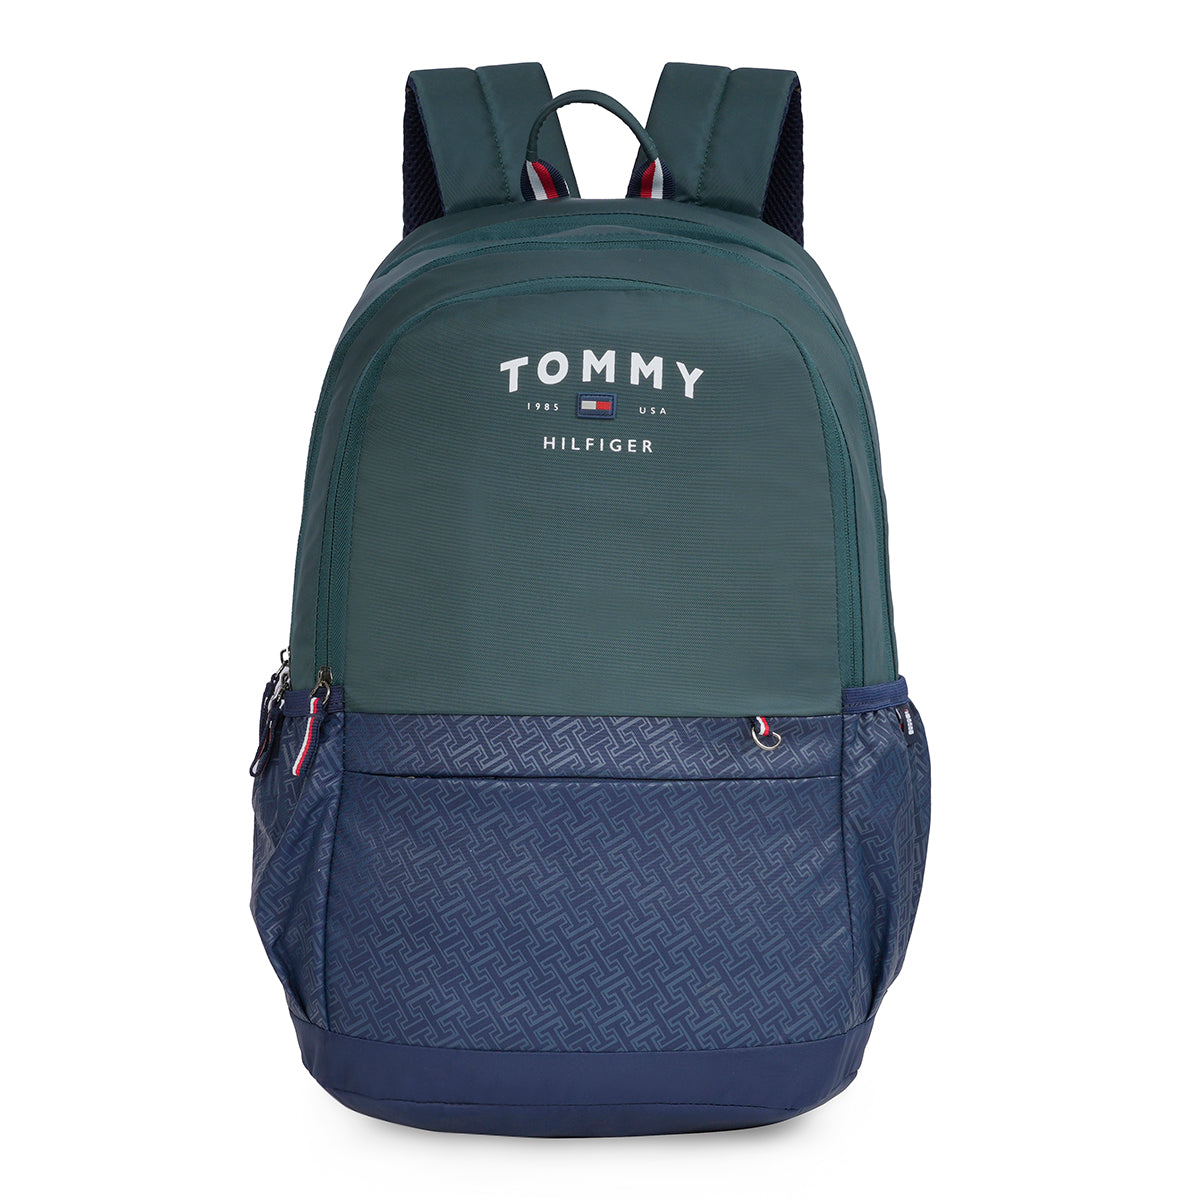 Tommy Hilfiger Albetros Back to School Backpack Olive